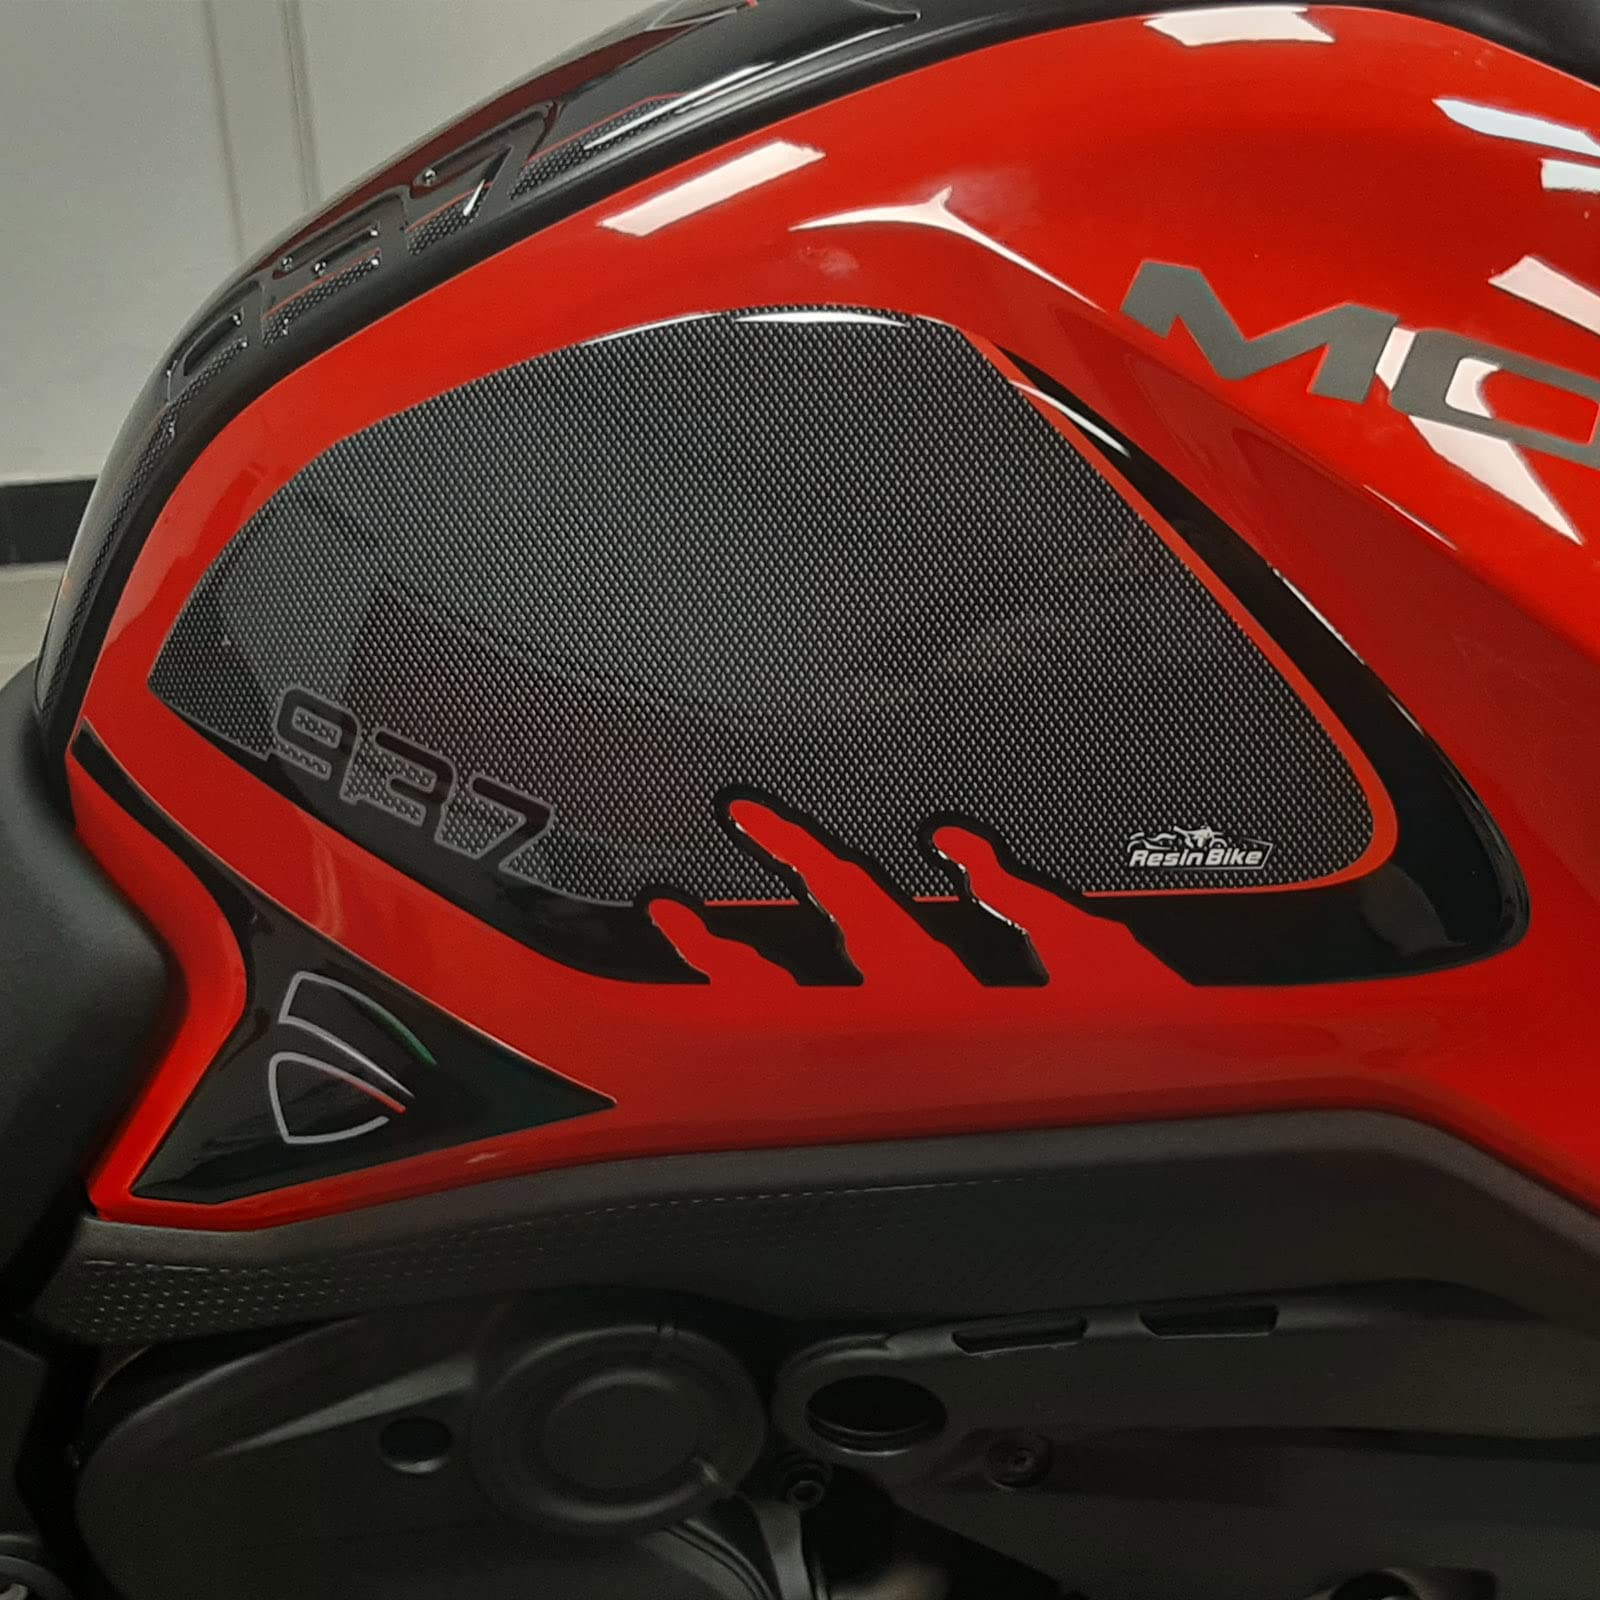 Resin Bike Aufkleber für Motorrad Kompatibel mit Ducati Monster 937 2021. Seitenschutz für den Tank vor Stößen und Kratzern. Paar 3D-Harzklebstoff - Stickers - Made in Italy